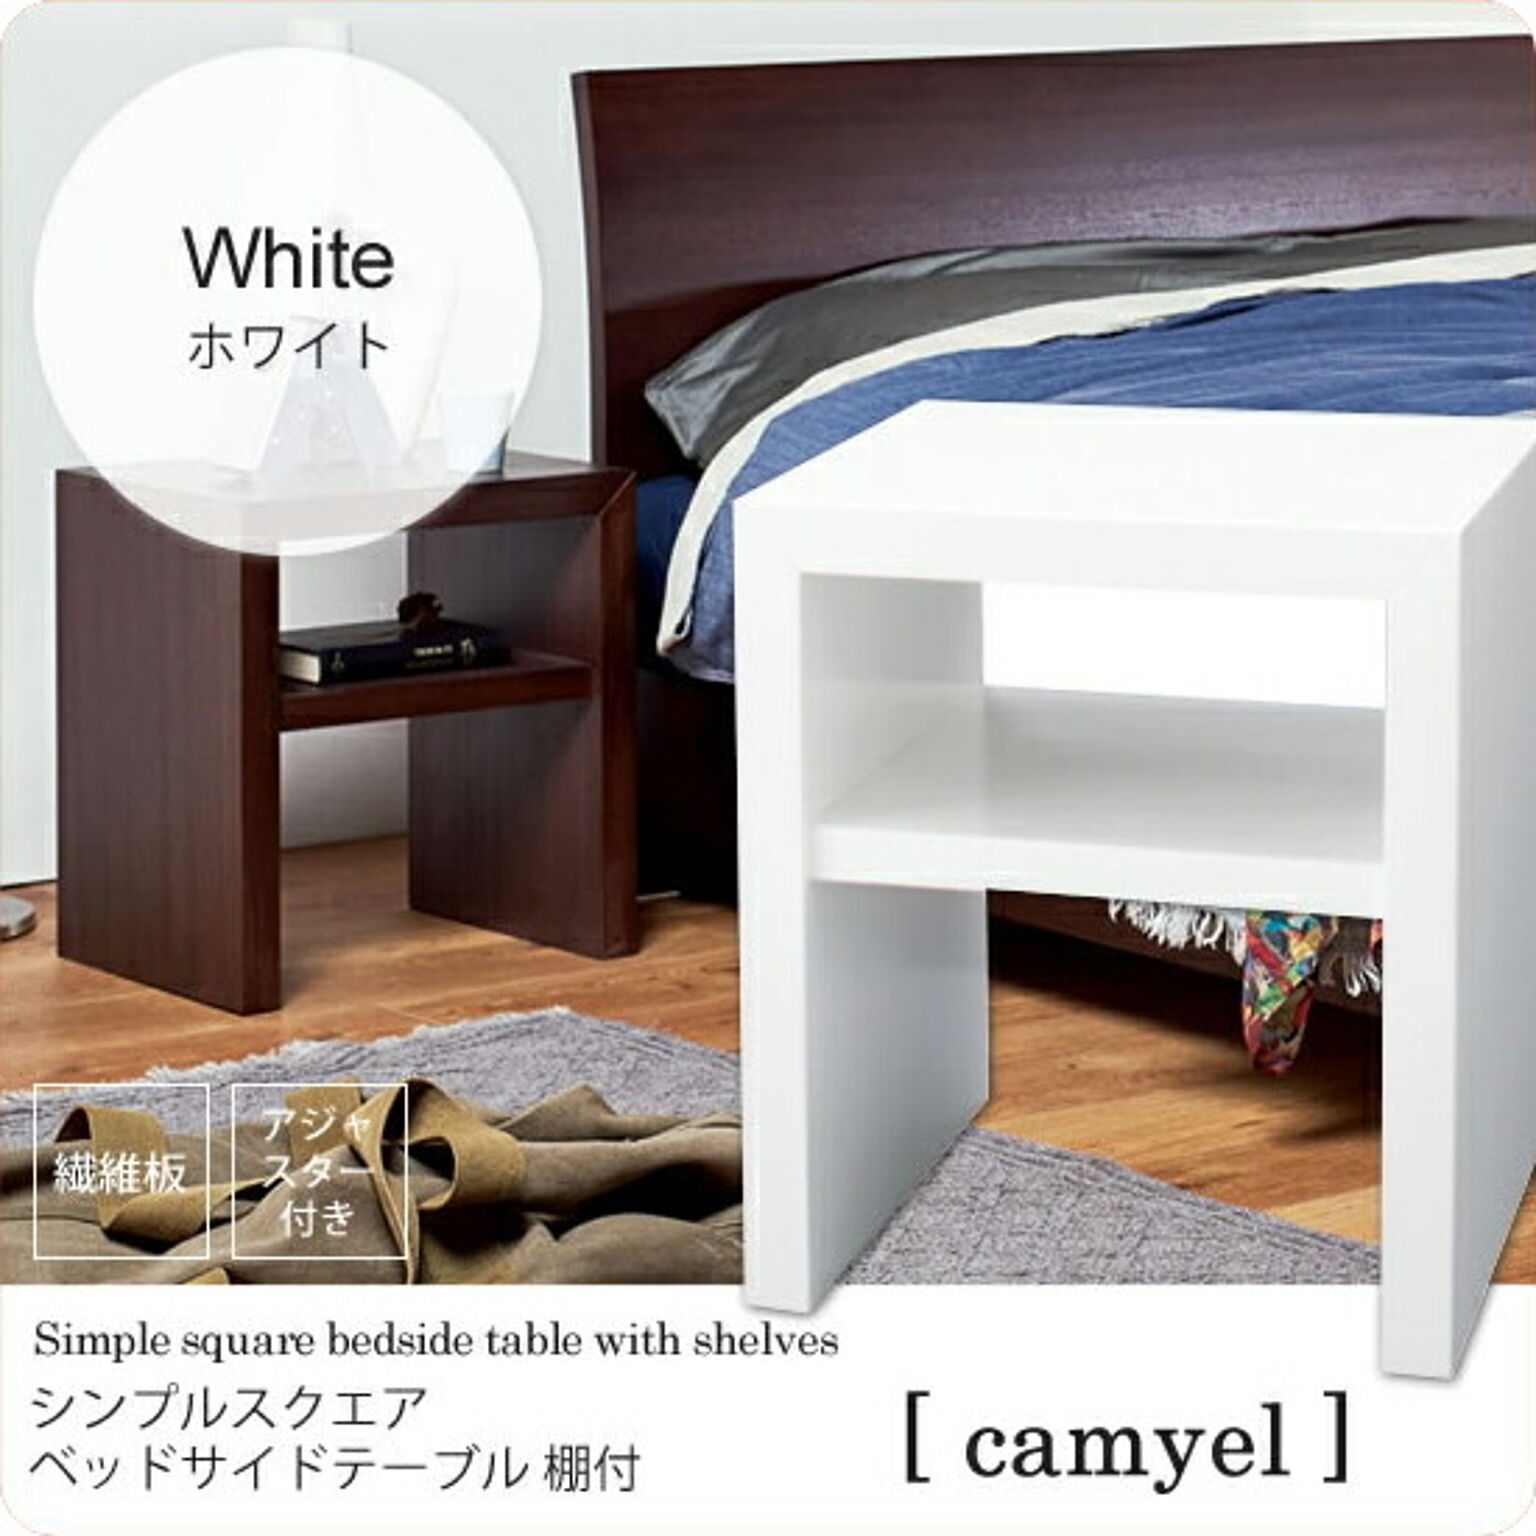 ホワイト ： シンプルスクエア ベッドサイドテーブル 棚付【camyel】 ホワイト(white) ナイトテーブル 寝室 フリーラック 棚 ベッドテーブル カジュアル 